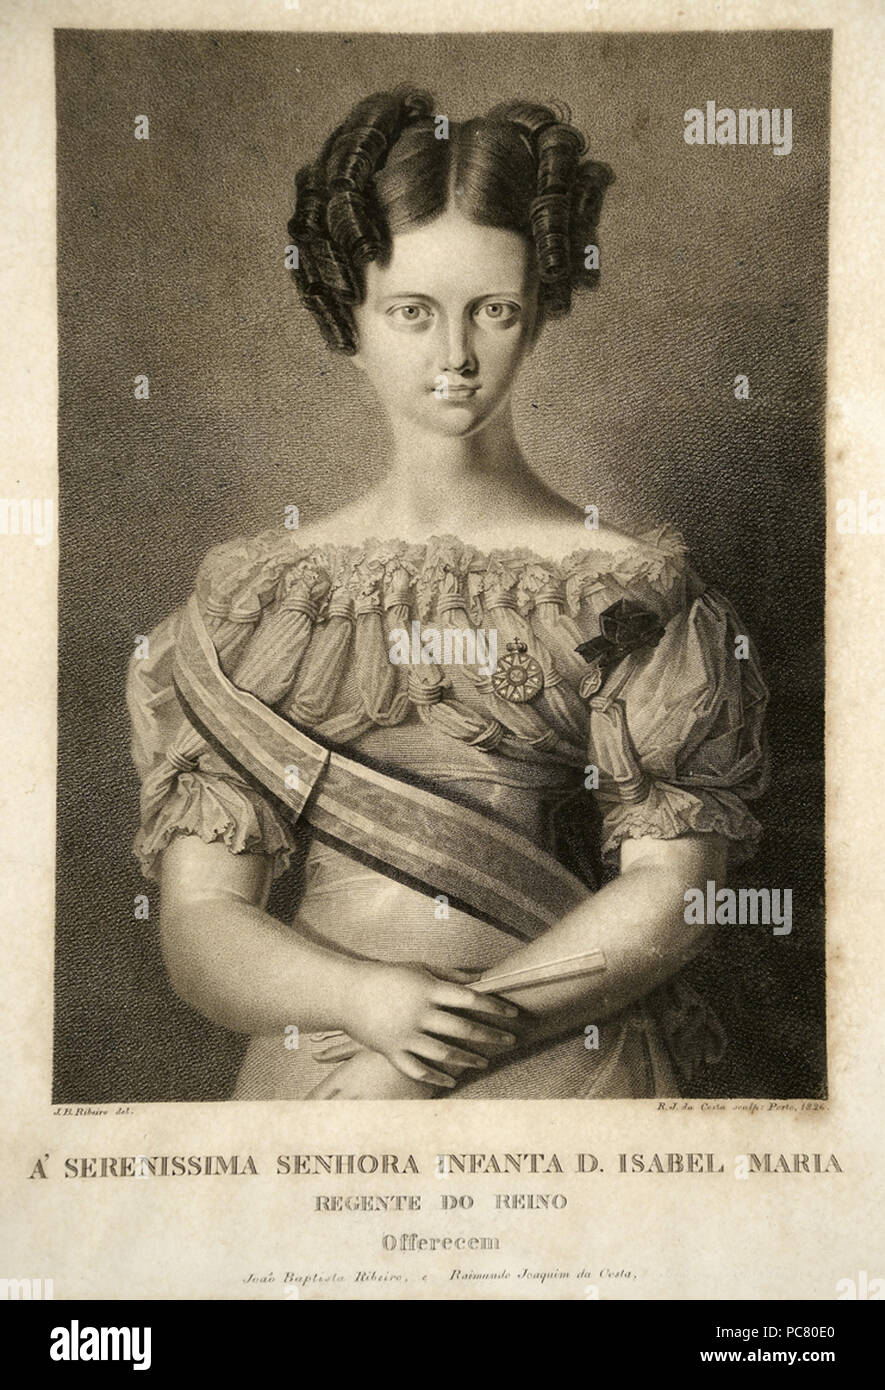 51 João Batista Ribeiro, Raimundo Joaquim da Costa - Retrato da la Infanta Doña María Isabel de Braganza, regente de Portugal Foto de stock